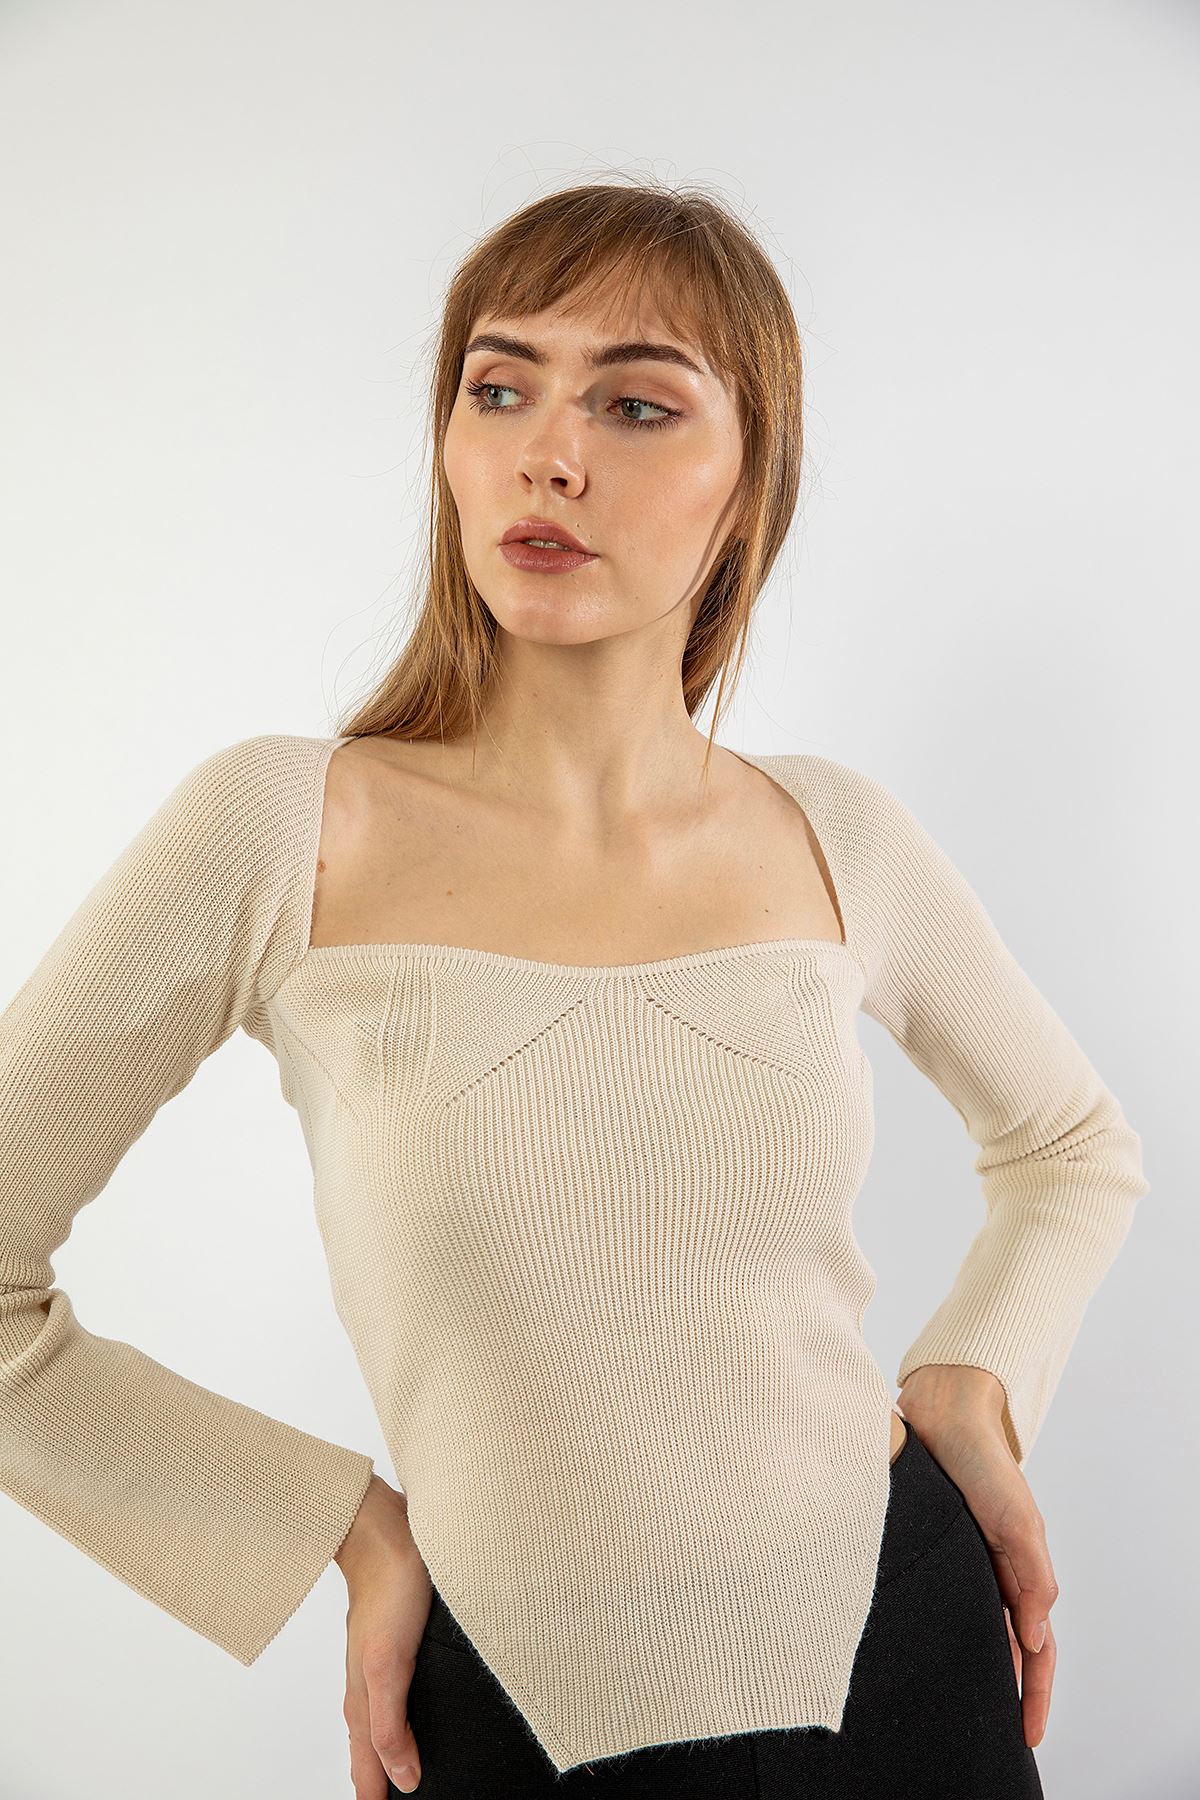 Knitwear Fabric Queen Anna Neck Short Tight Fit Asymmetric Women Sweater - Ecru